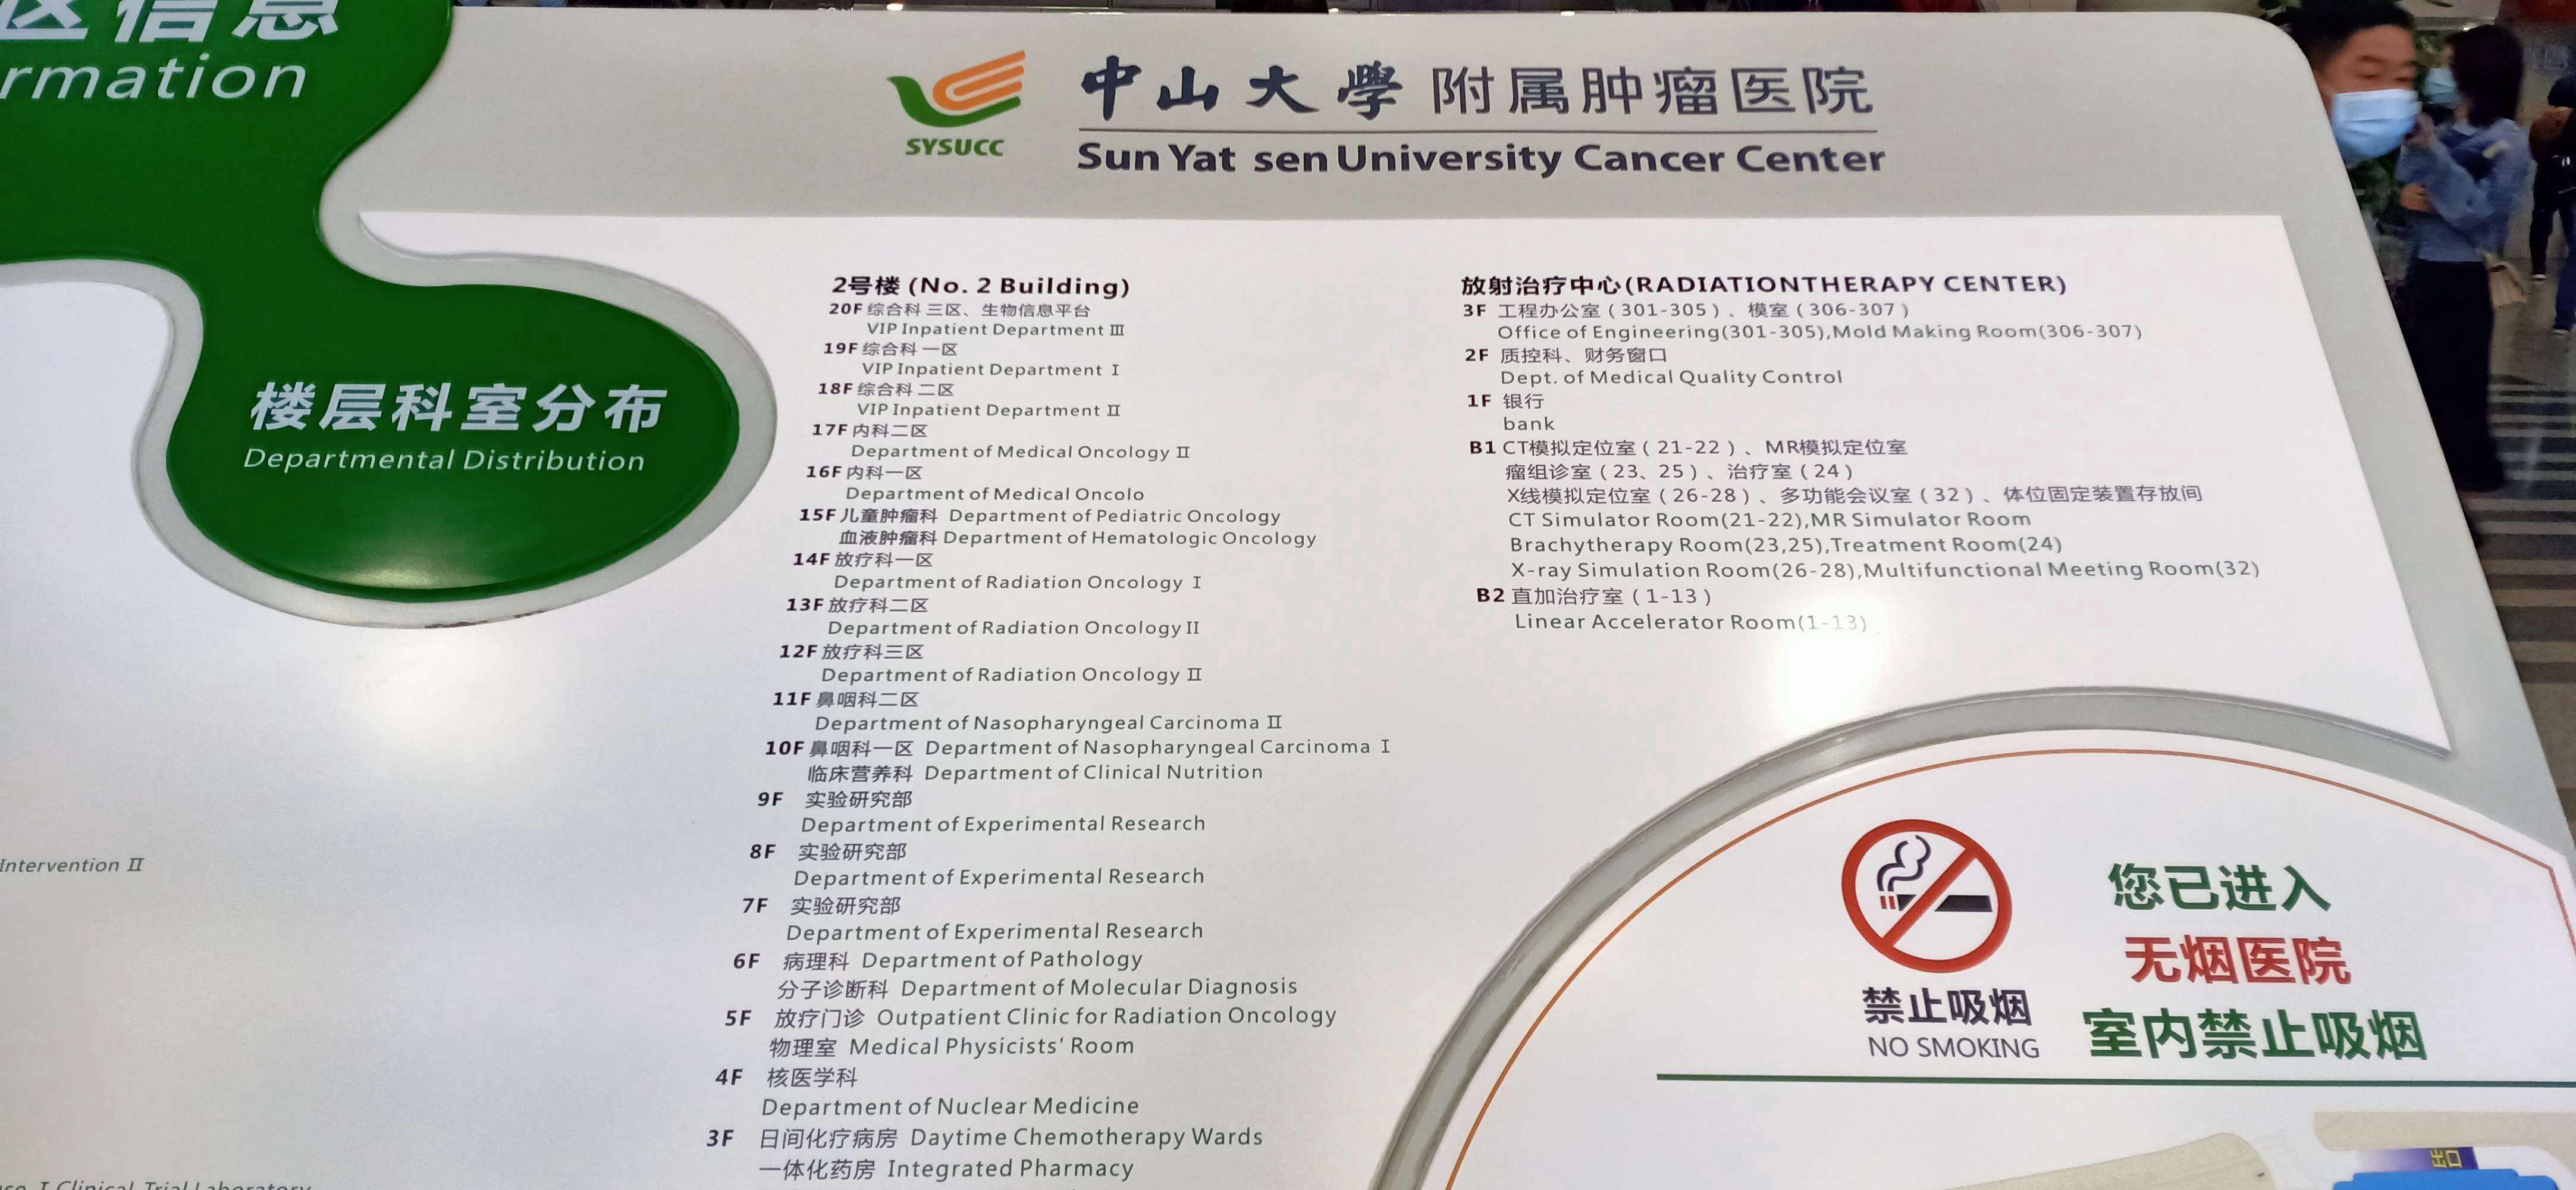 关于北京大学肿瘤医院挂号号贩子联系方式第一时间安排联系方式哪家好的信息